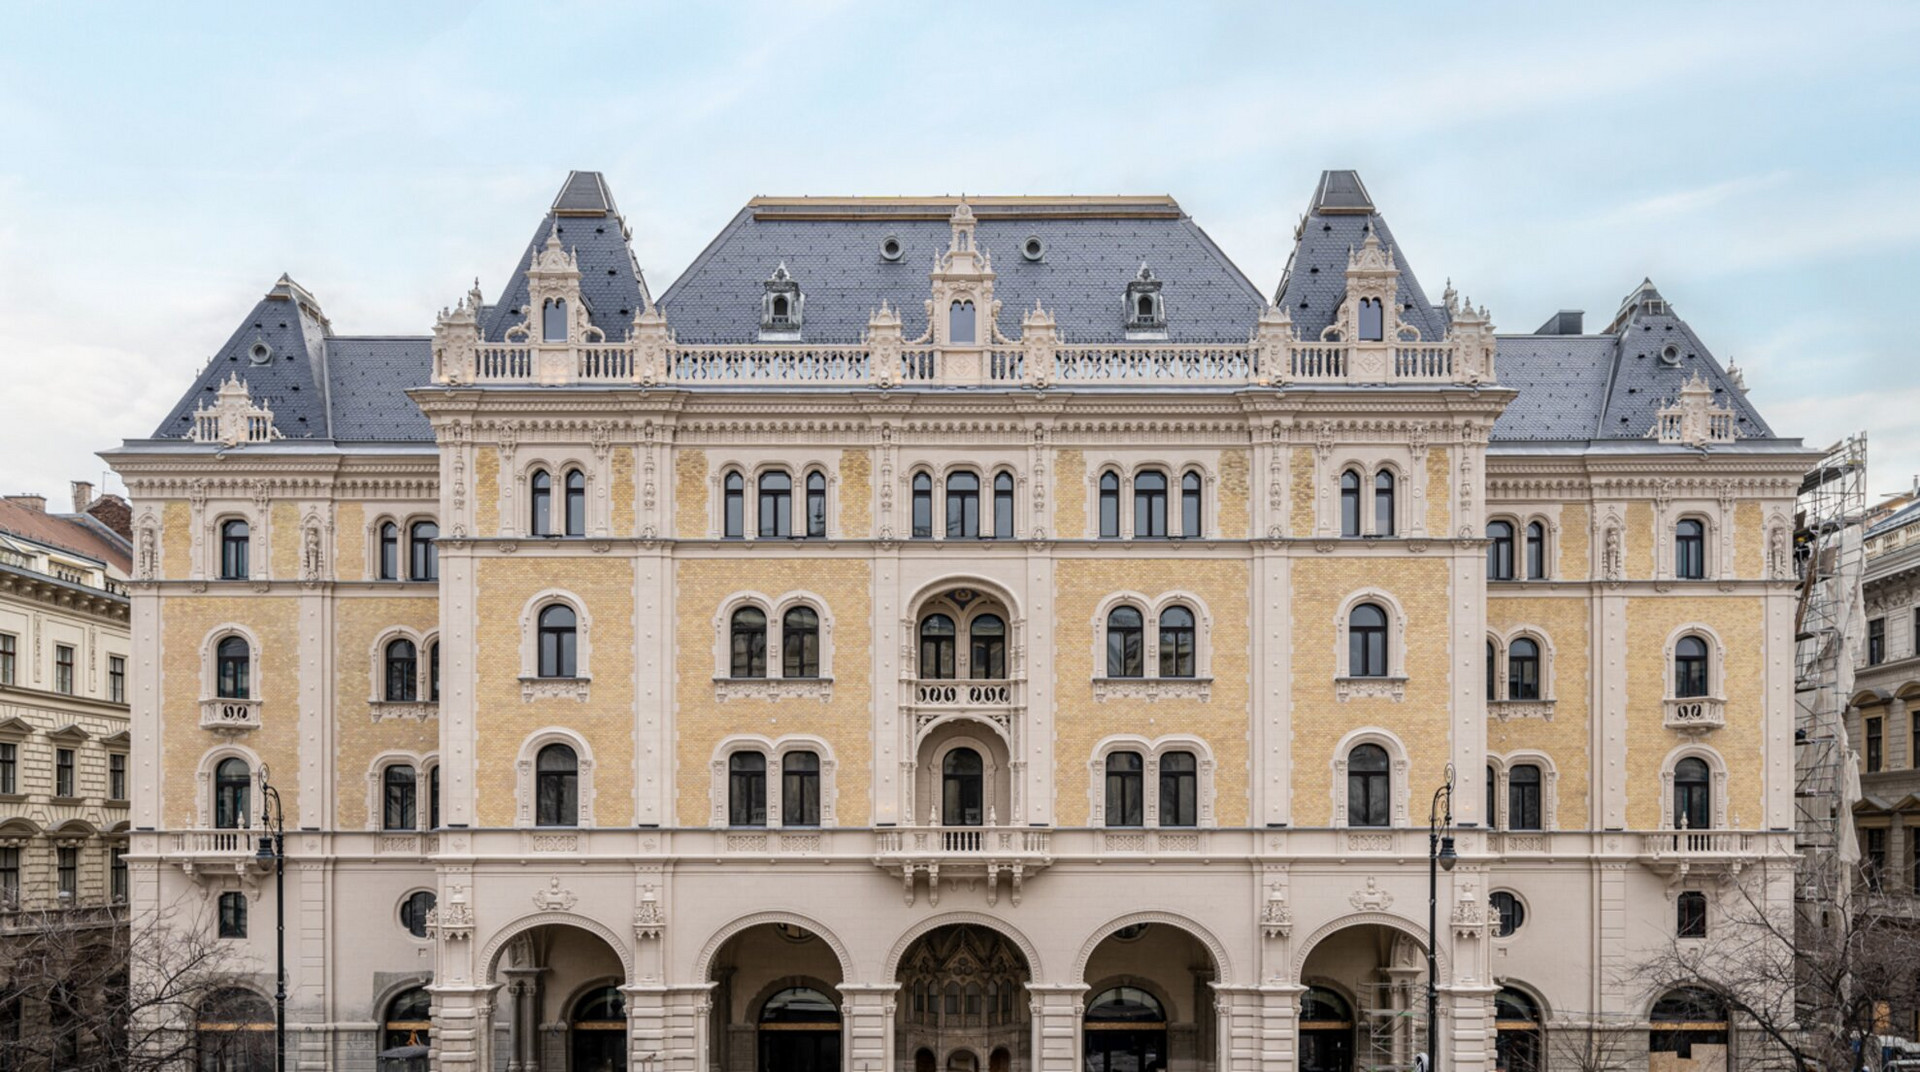 W Budapest Hotelként nyitotta meg kapuit az egykori Drechsler-palota